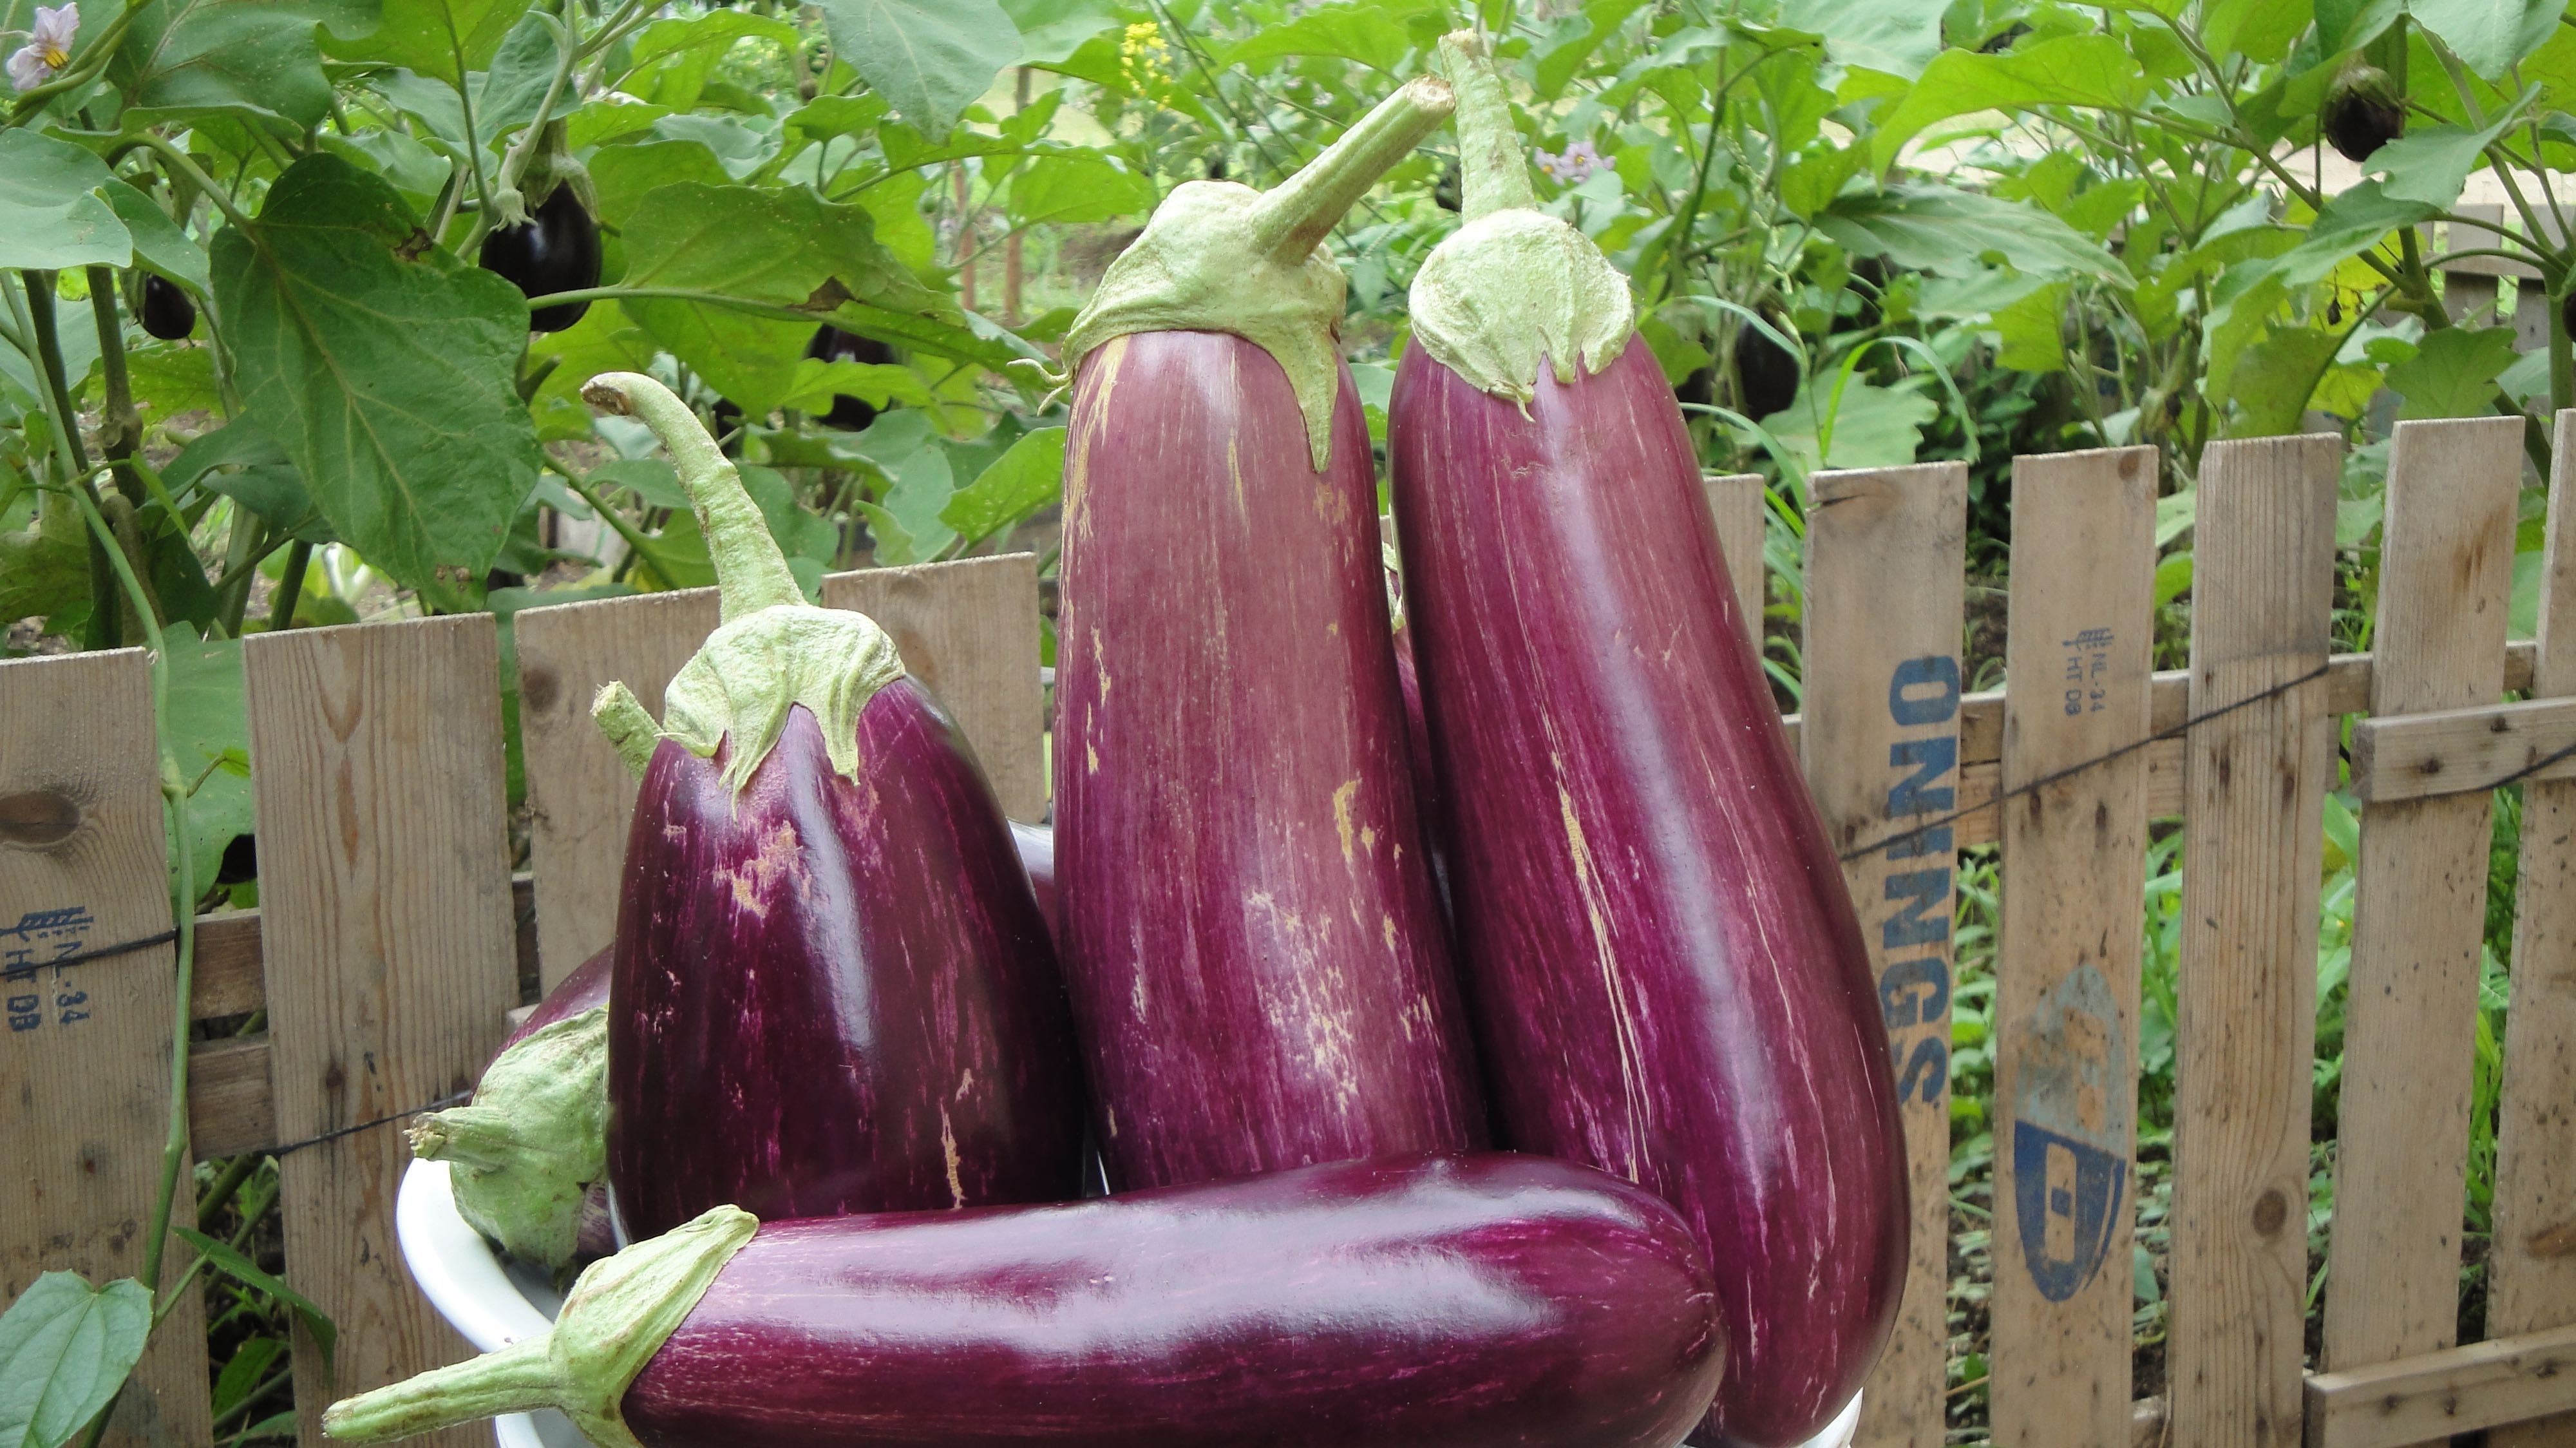 5 eggplants